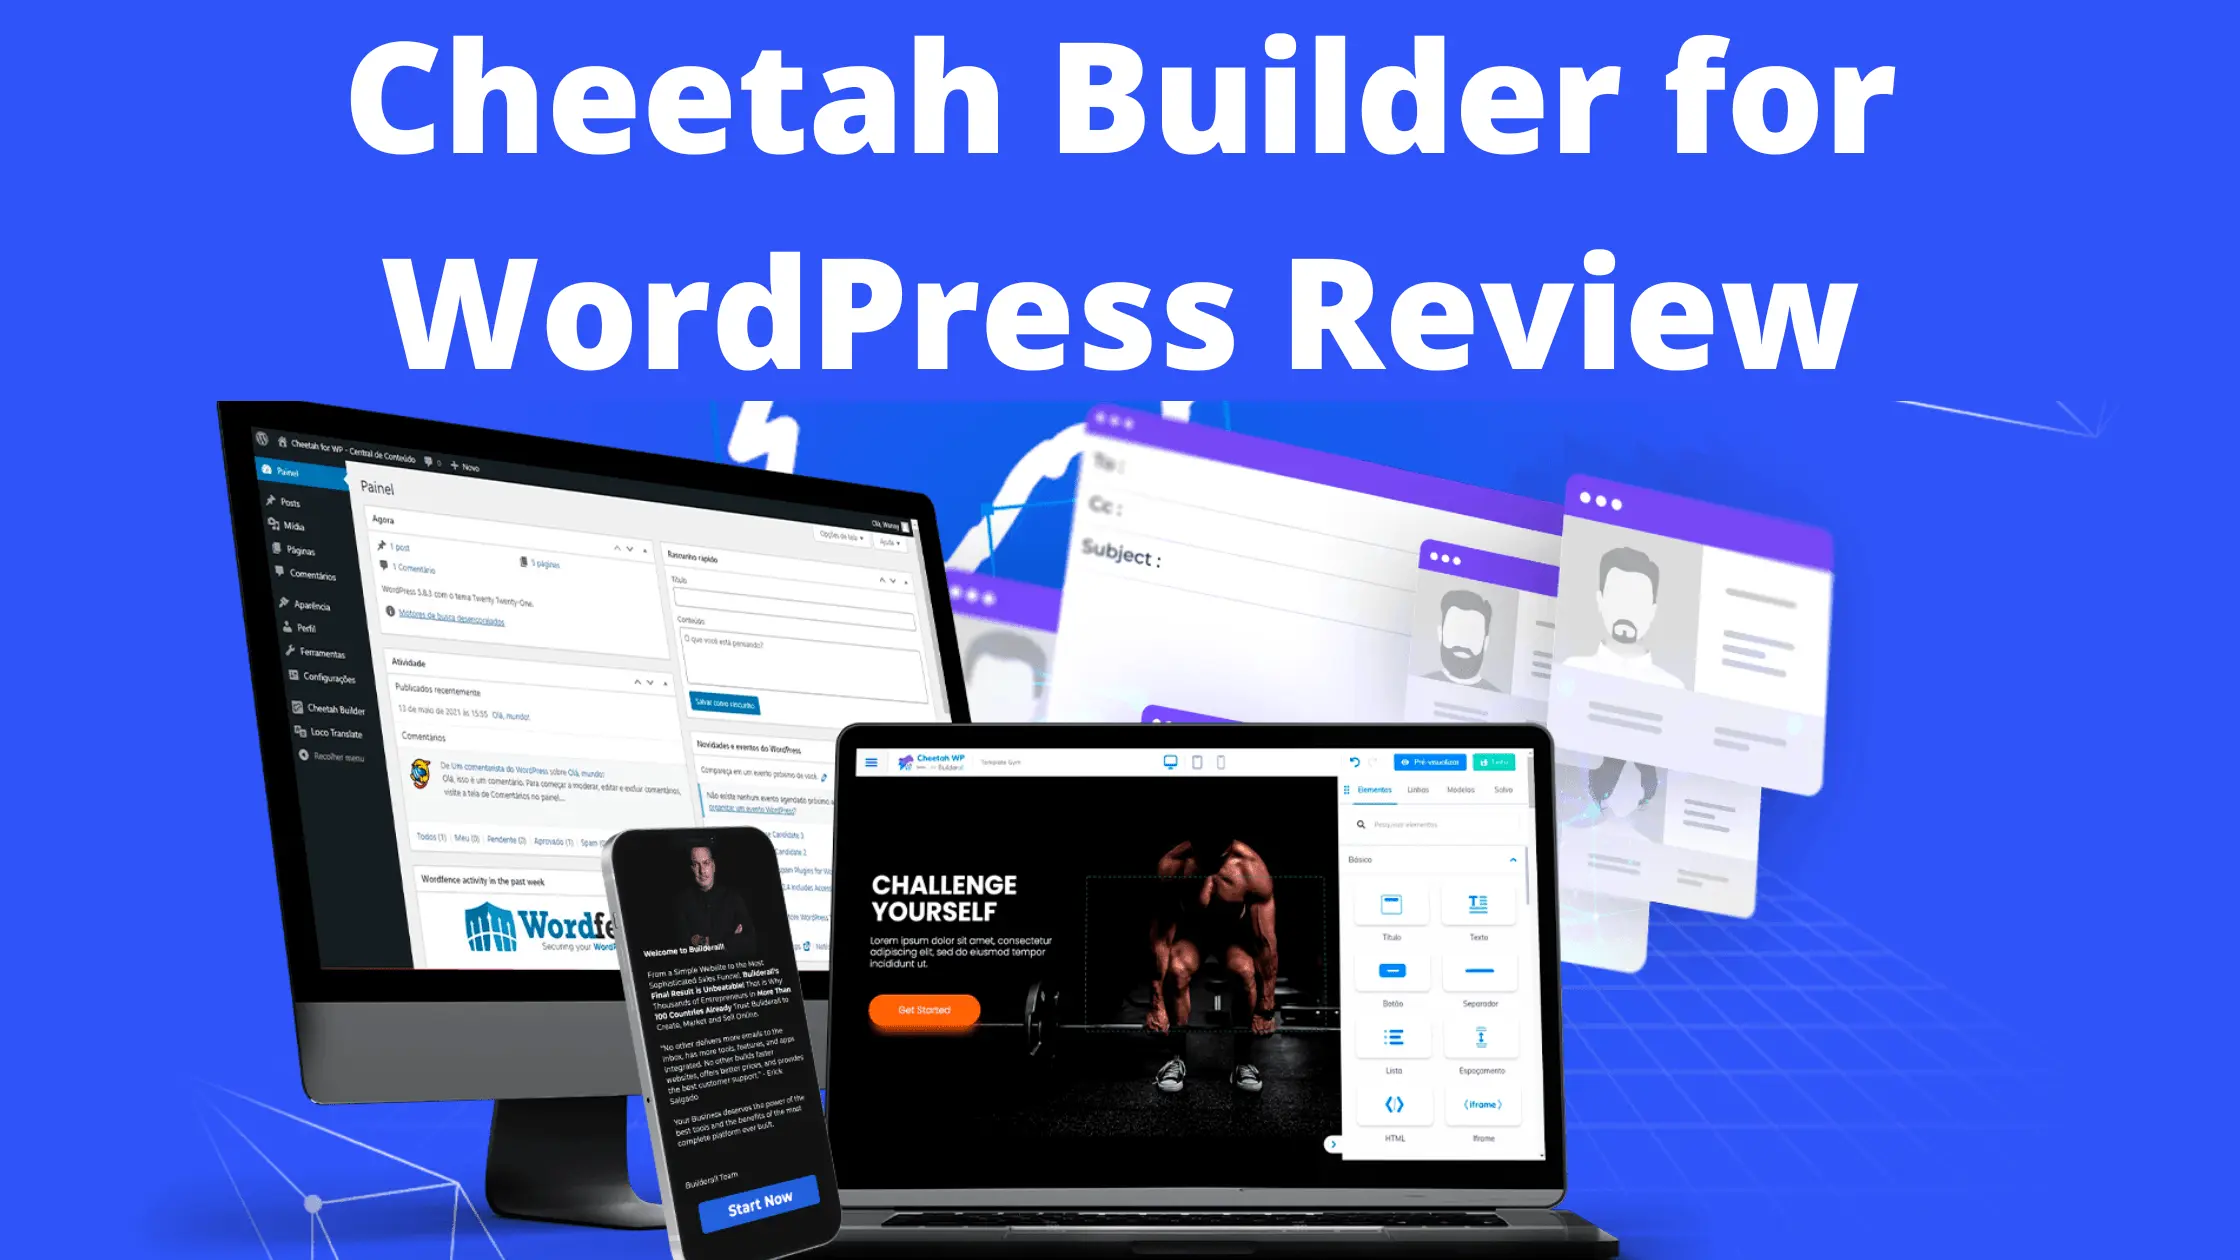 Cheetah Builder for WordPress Review